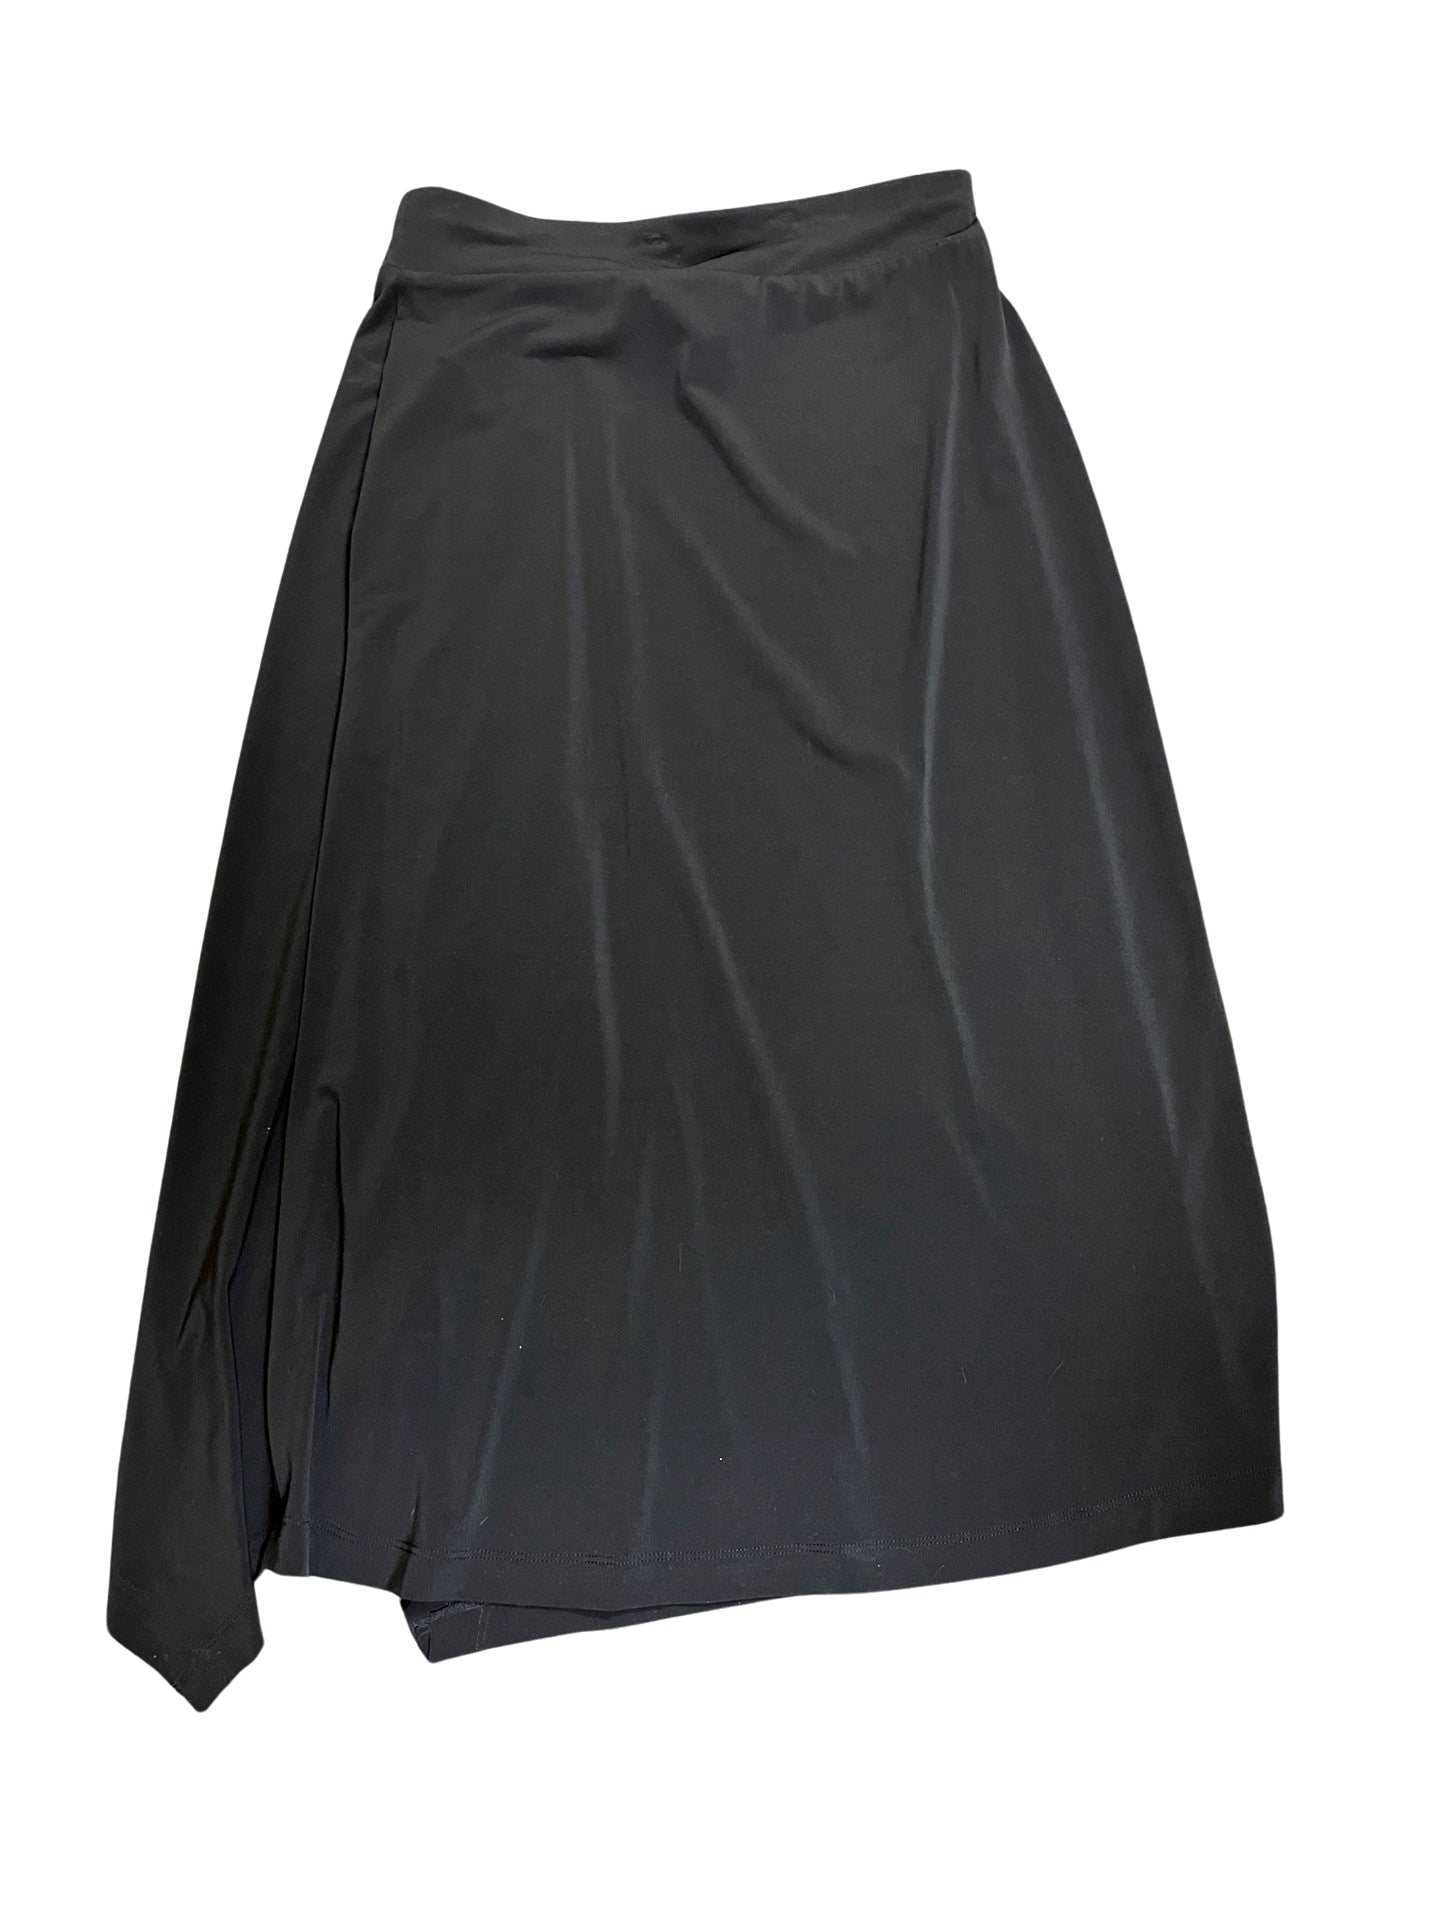 Size 6 Michael Kors Skirt